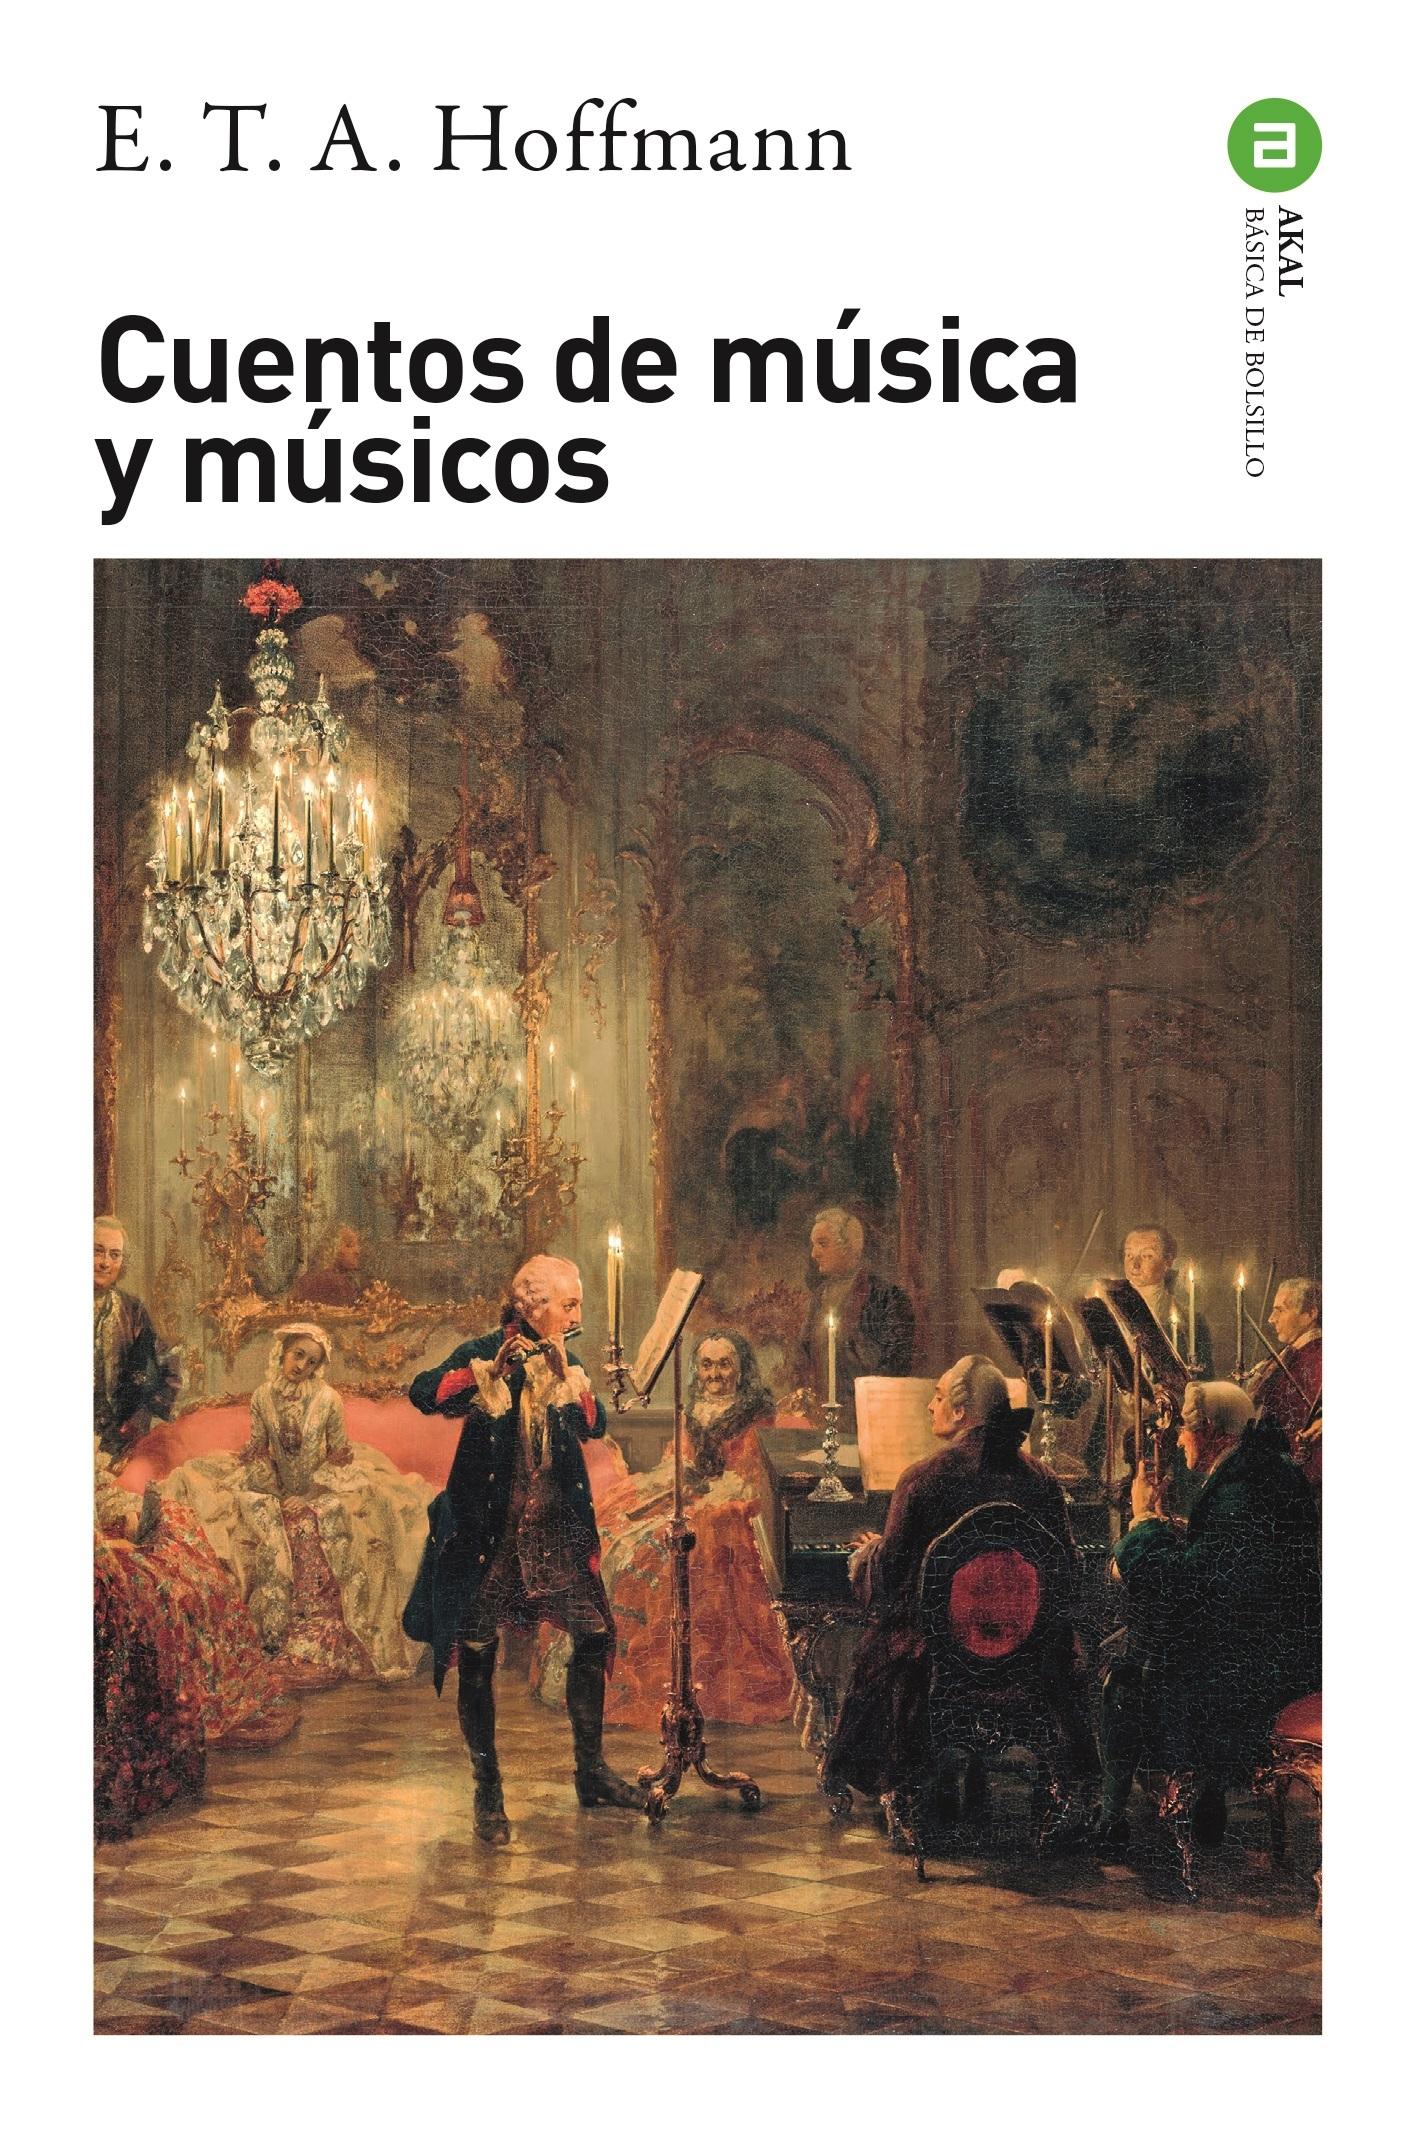 CUENTOS DE MUSICA Y MUSICOS